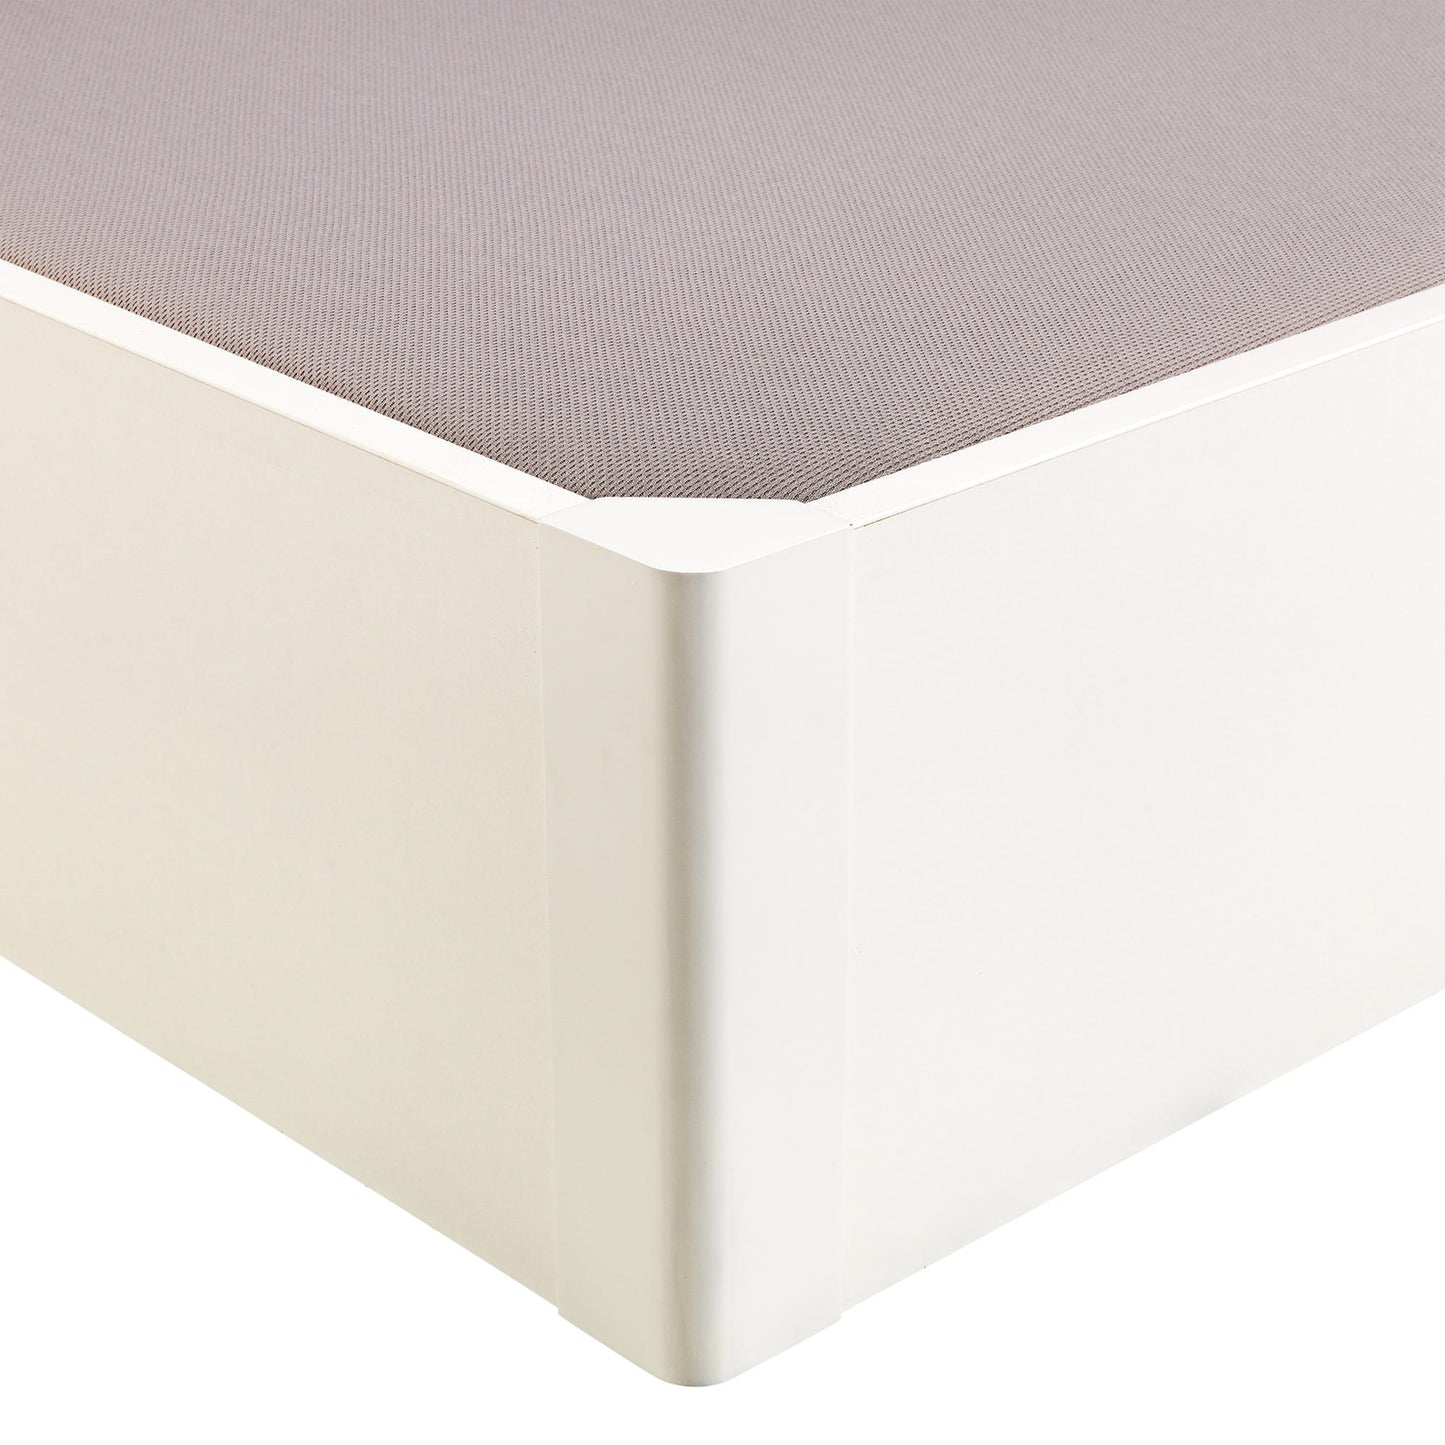 Canapé abatible de madera tapa única de color blanco - DESIGN - 160x190